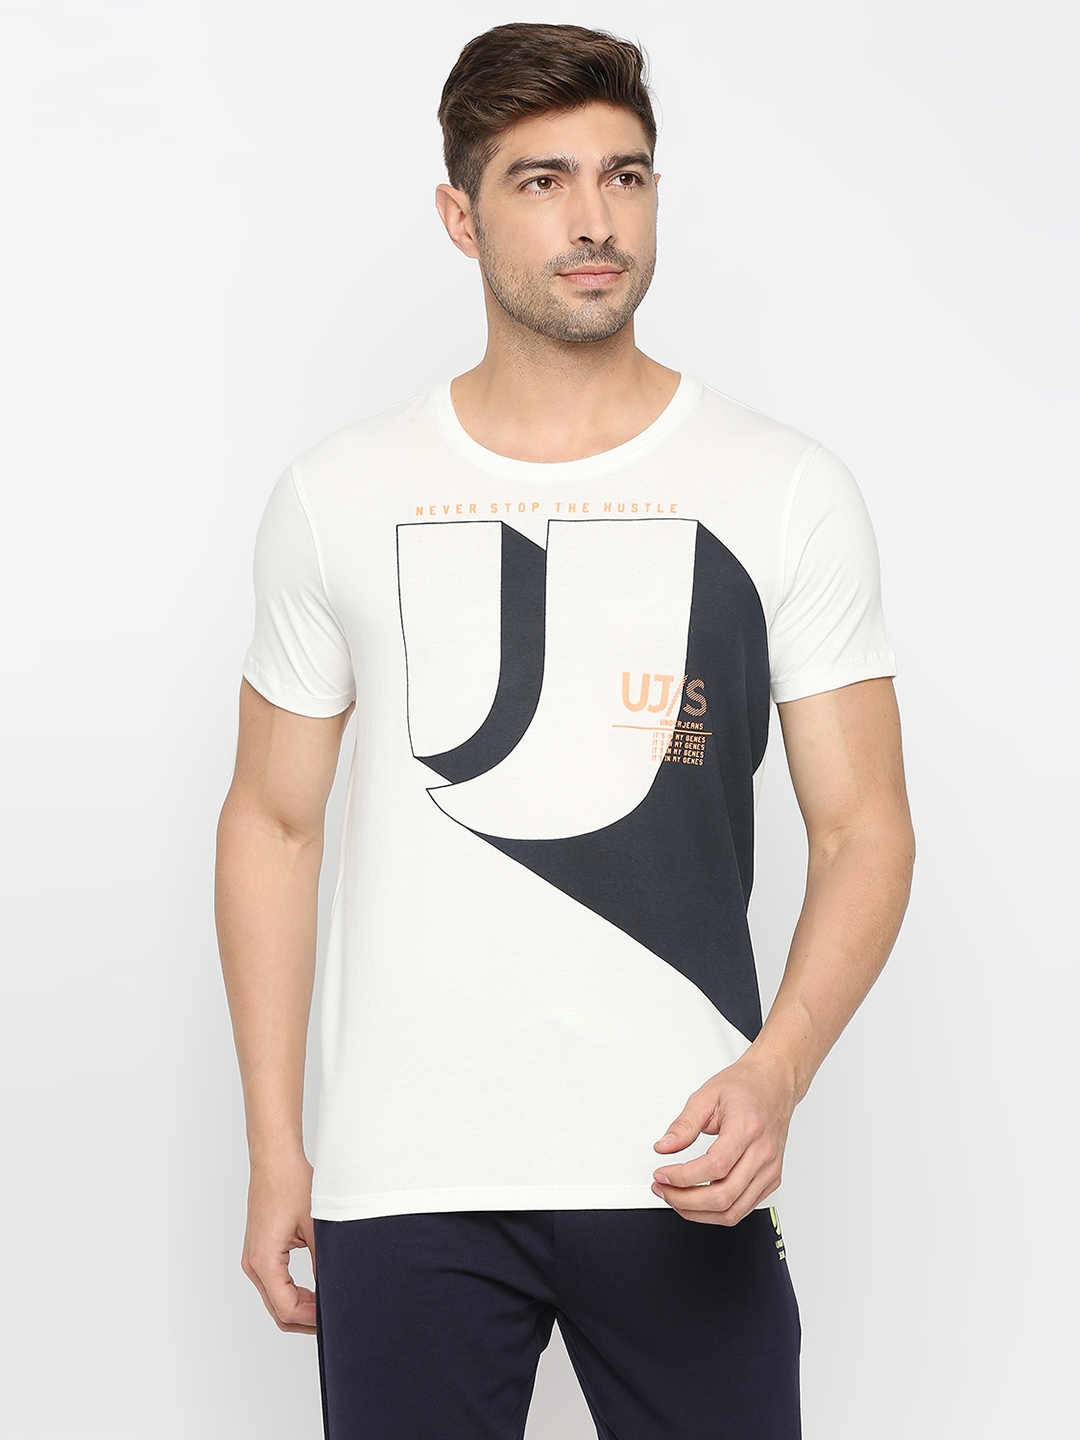 Underjeans by Spykar Men Ecru Cotton Round Neck Printed Tshirt